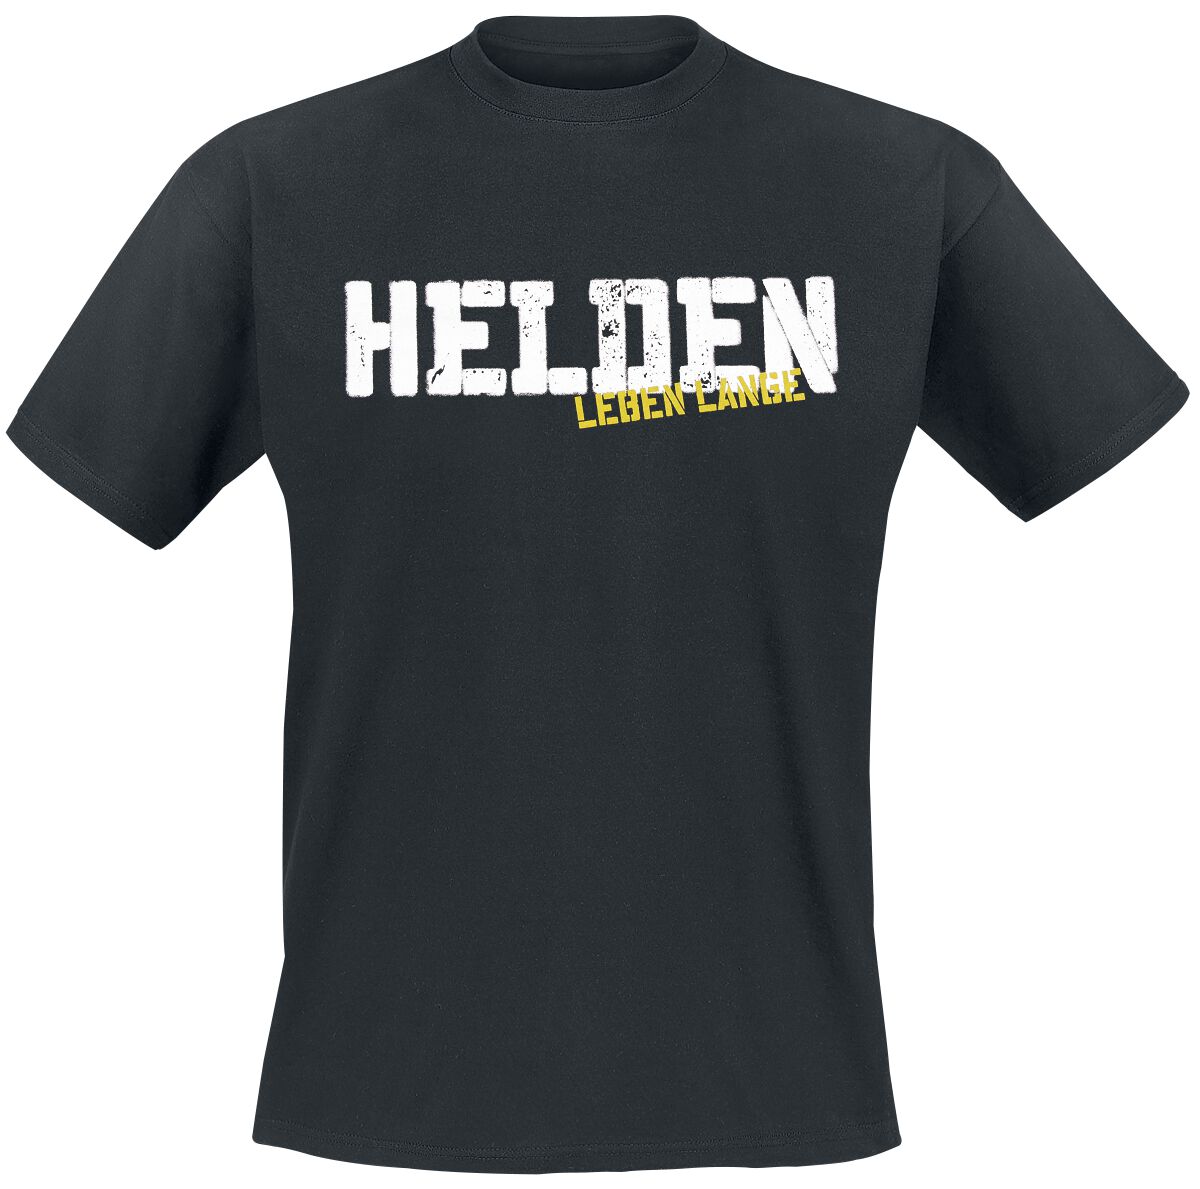 Böhse Onkelz T-Shirt - Helden leben lange - S bis 3XL - für Männer - Größe S - schwarz  - Lizenziertes Merchandise!